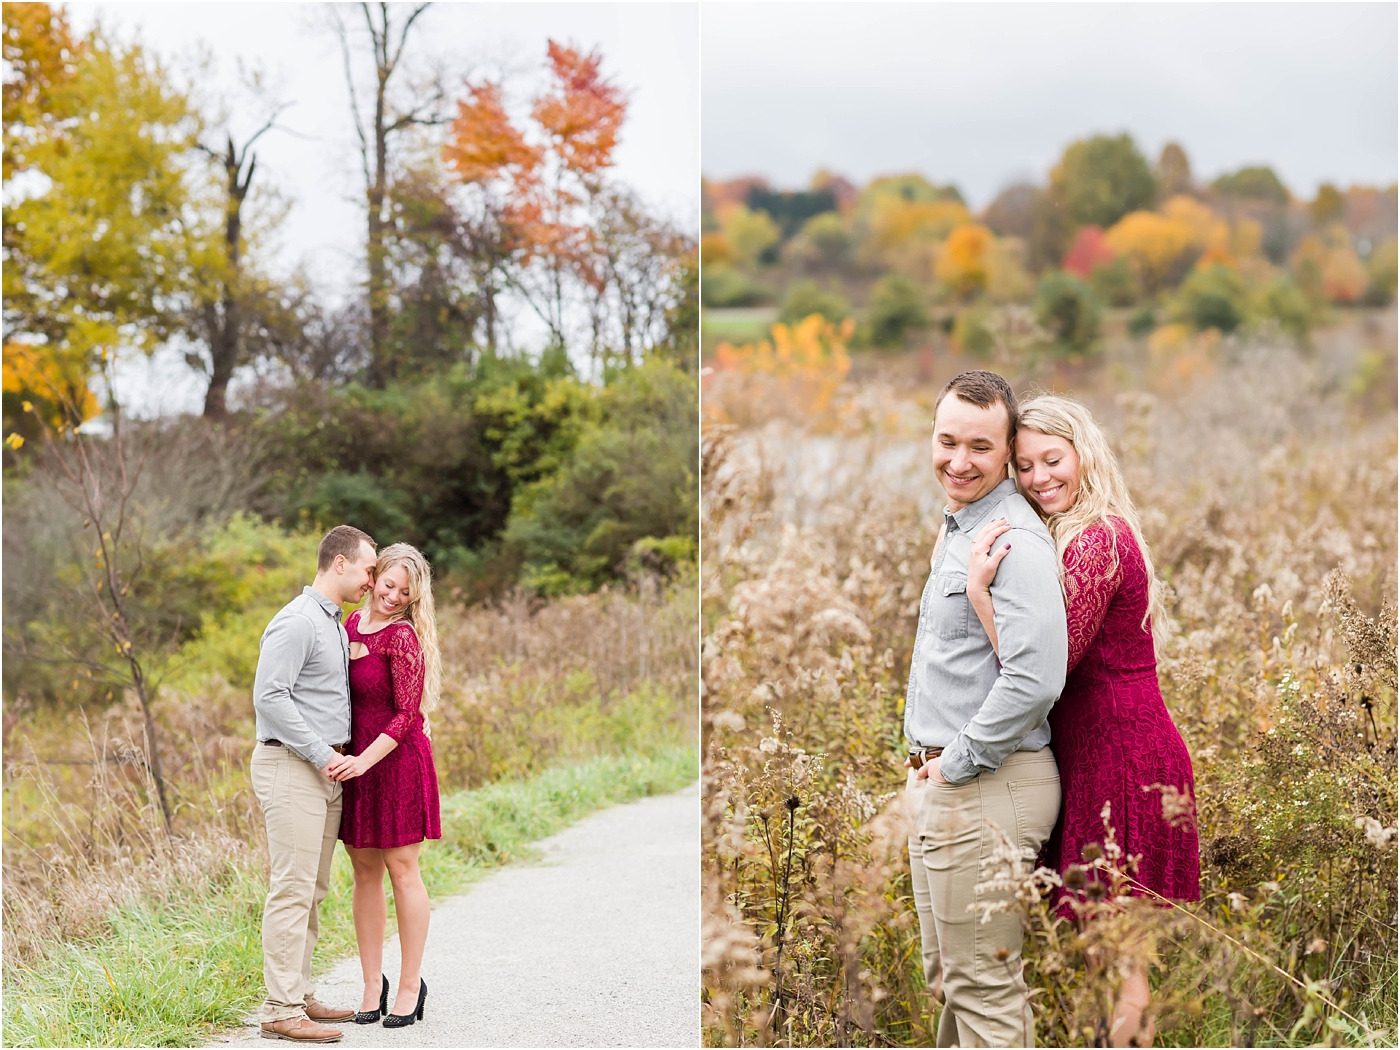 Fall Engagement Photos,Loren Jackson Photography,Petros Park,Photographer Akron Ohio,cleveland wedding photography,